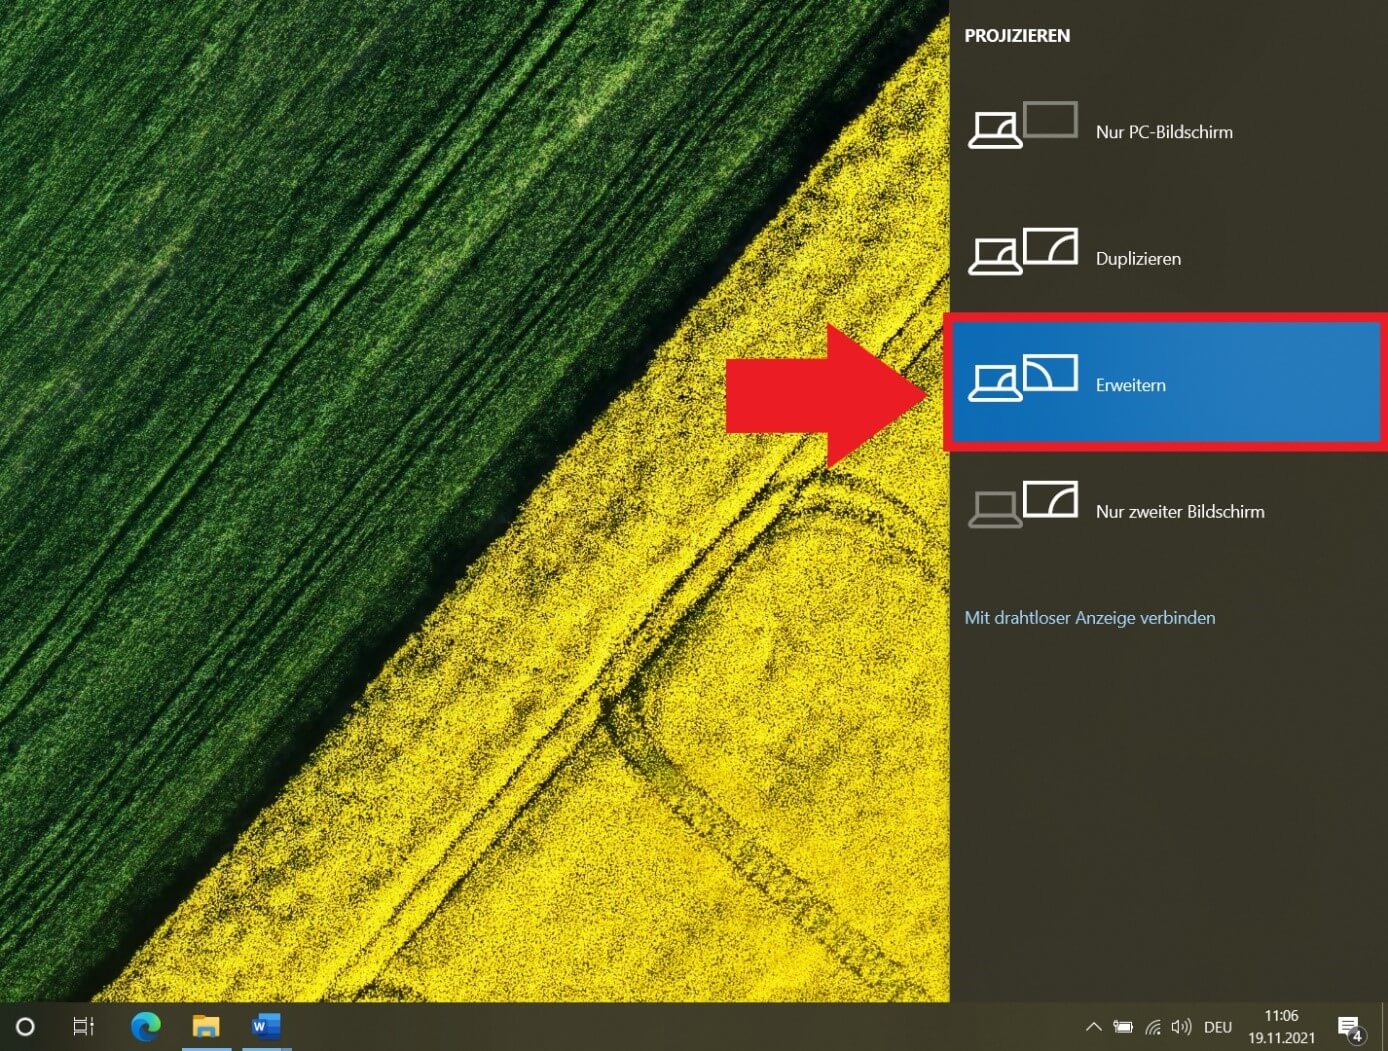 Windows 10: Schnellmenü mit Optionen die Nutzung von Anzeigegeräten